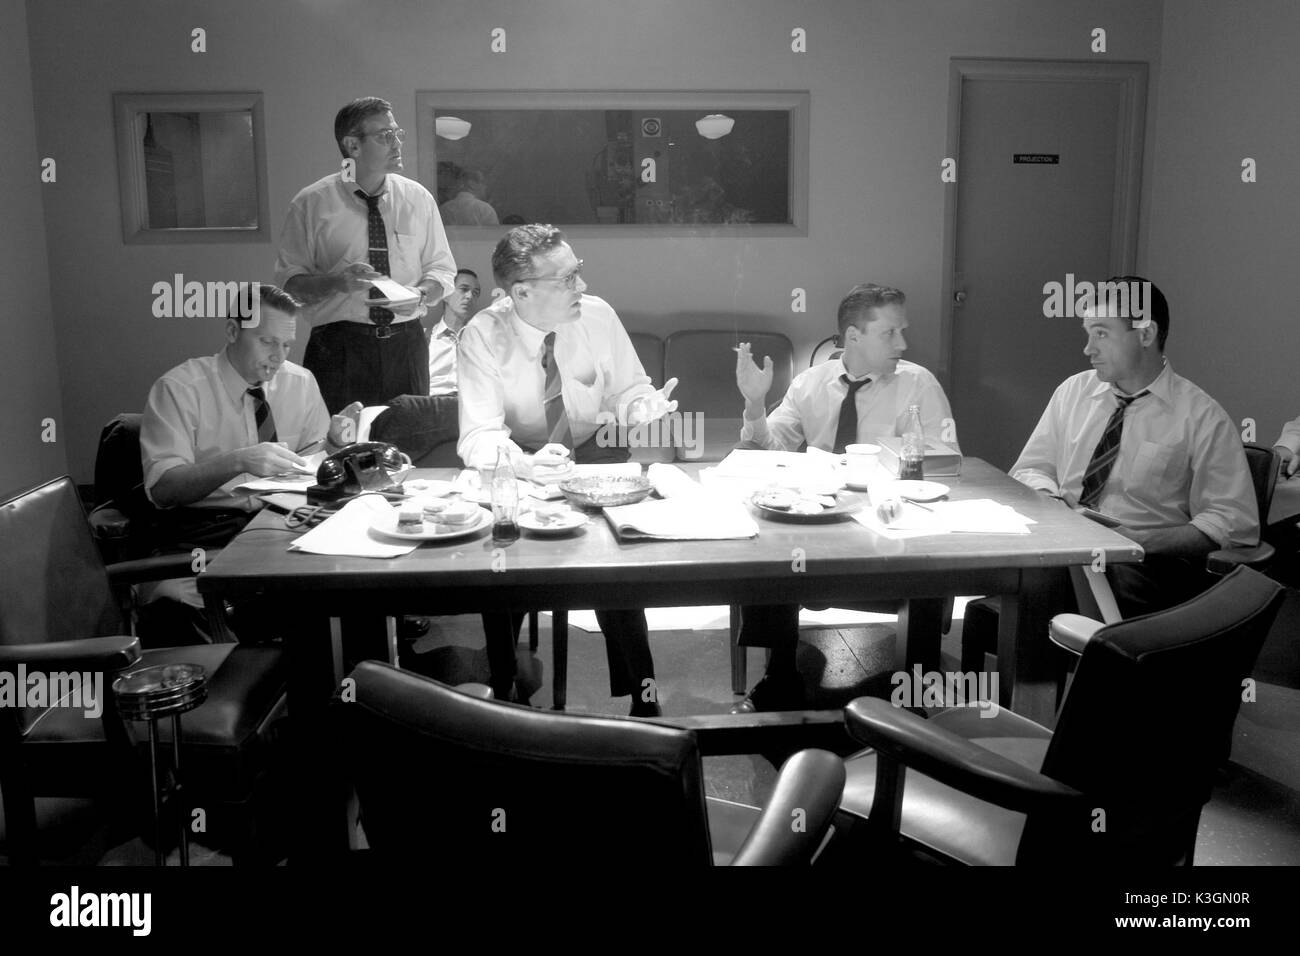 Fred freundlich (George Clooney), Edward R. Murrow (David Strathairn) und Joe Wershba (Robert Downey Jr.) in der Diskussion. Gute Nacht, und viel Glück, GEORGE CLOONEY als Fred Freundlich, DAVID STRATHAIRN als Edward R. Murrow, TATE DONOVAN als Jesse Zousmer, REED DIAMOND, John Aaron, Robert Downey JR. als Joe Wershba Datum: 2005 Stockfoto